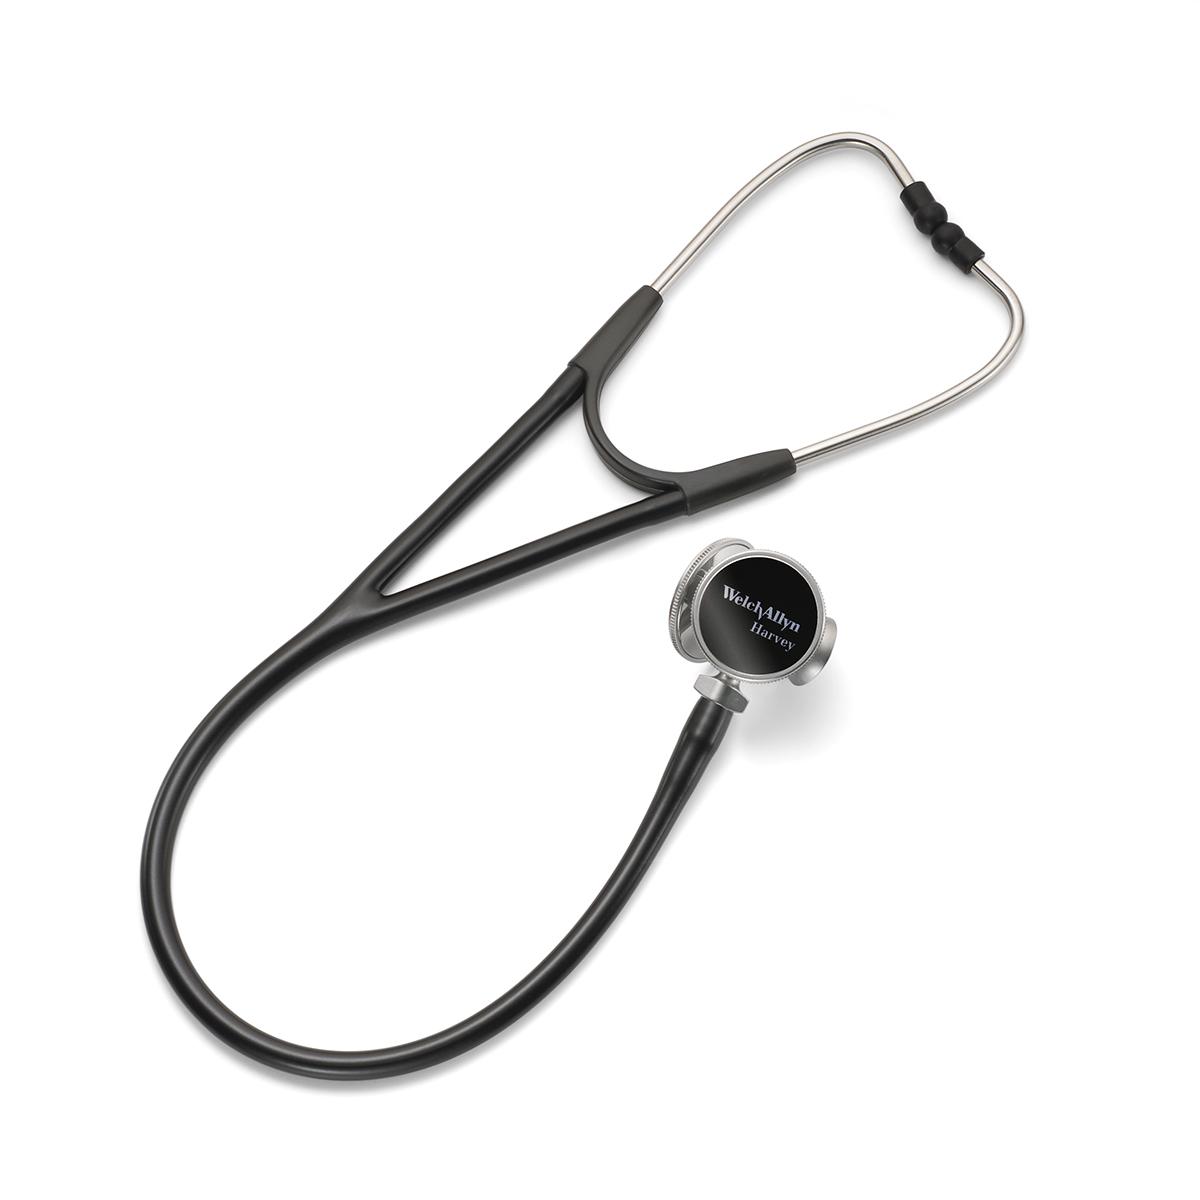 ชุดหูฟังทางการแพทย์ Harvey DLX Stethoscope นี้มีให้เลือกเพิ่มแบบสามหัวหมุนได้ที่มาพร้อม Diaphragm ทองเหลืองทรงกระดิ่งและแบนราบในพื้นผิวแบบลูกฟูก